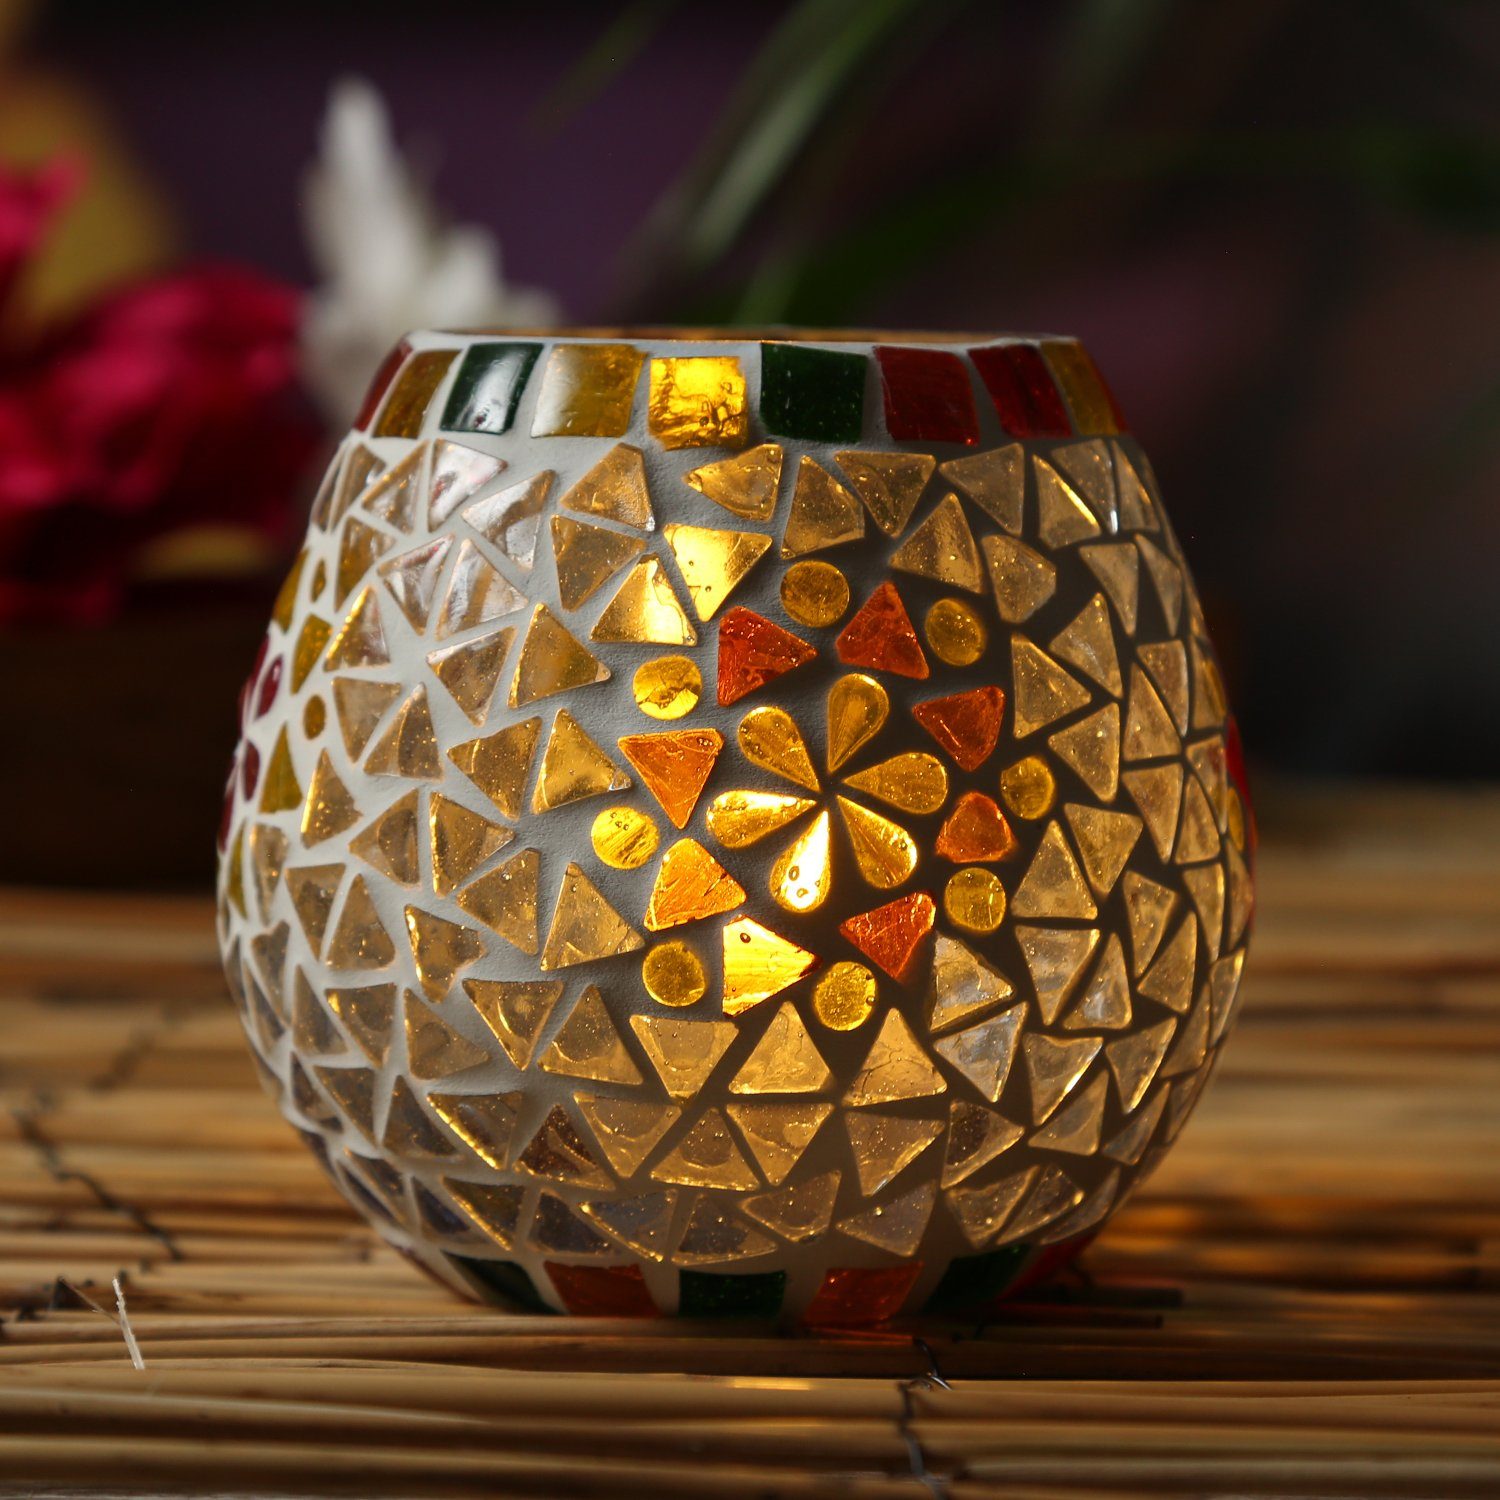 MARELIDA Windlicht »Windlicht Mosaik Glas Kerzenhalter Teelichthalter  Teelichtglas H: 11cm weiß« (1 Stück) online kaufen | OTTO